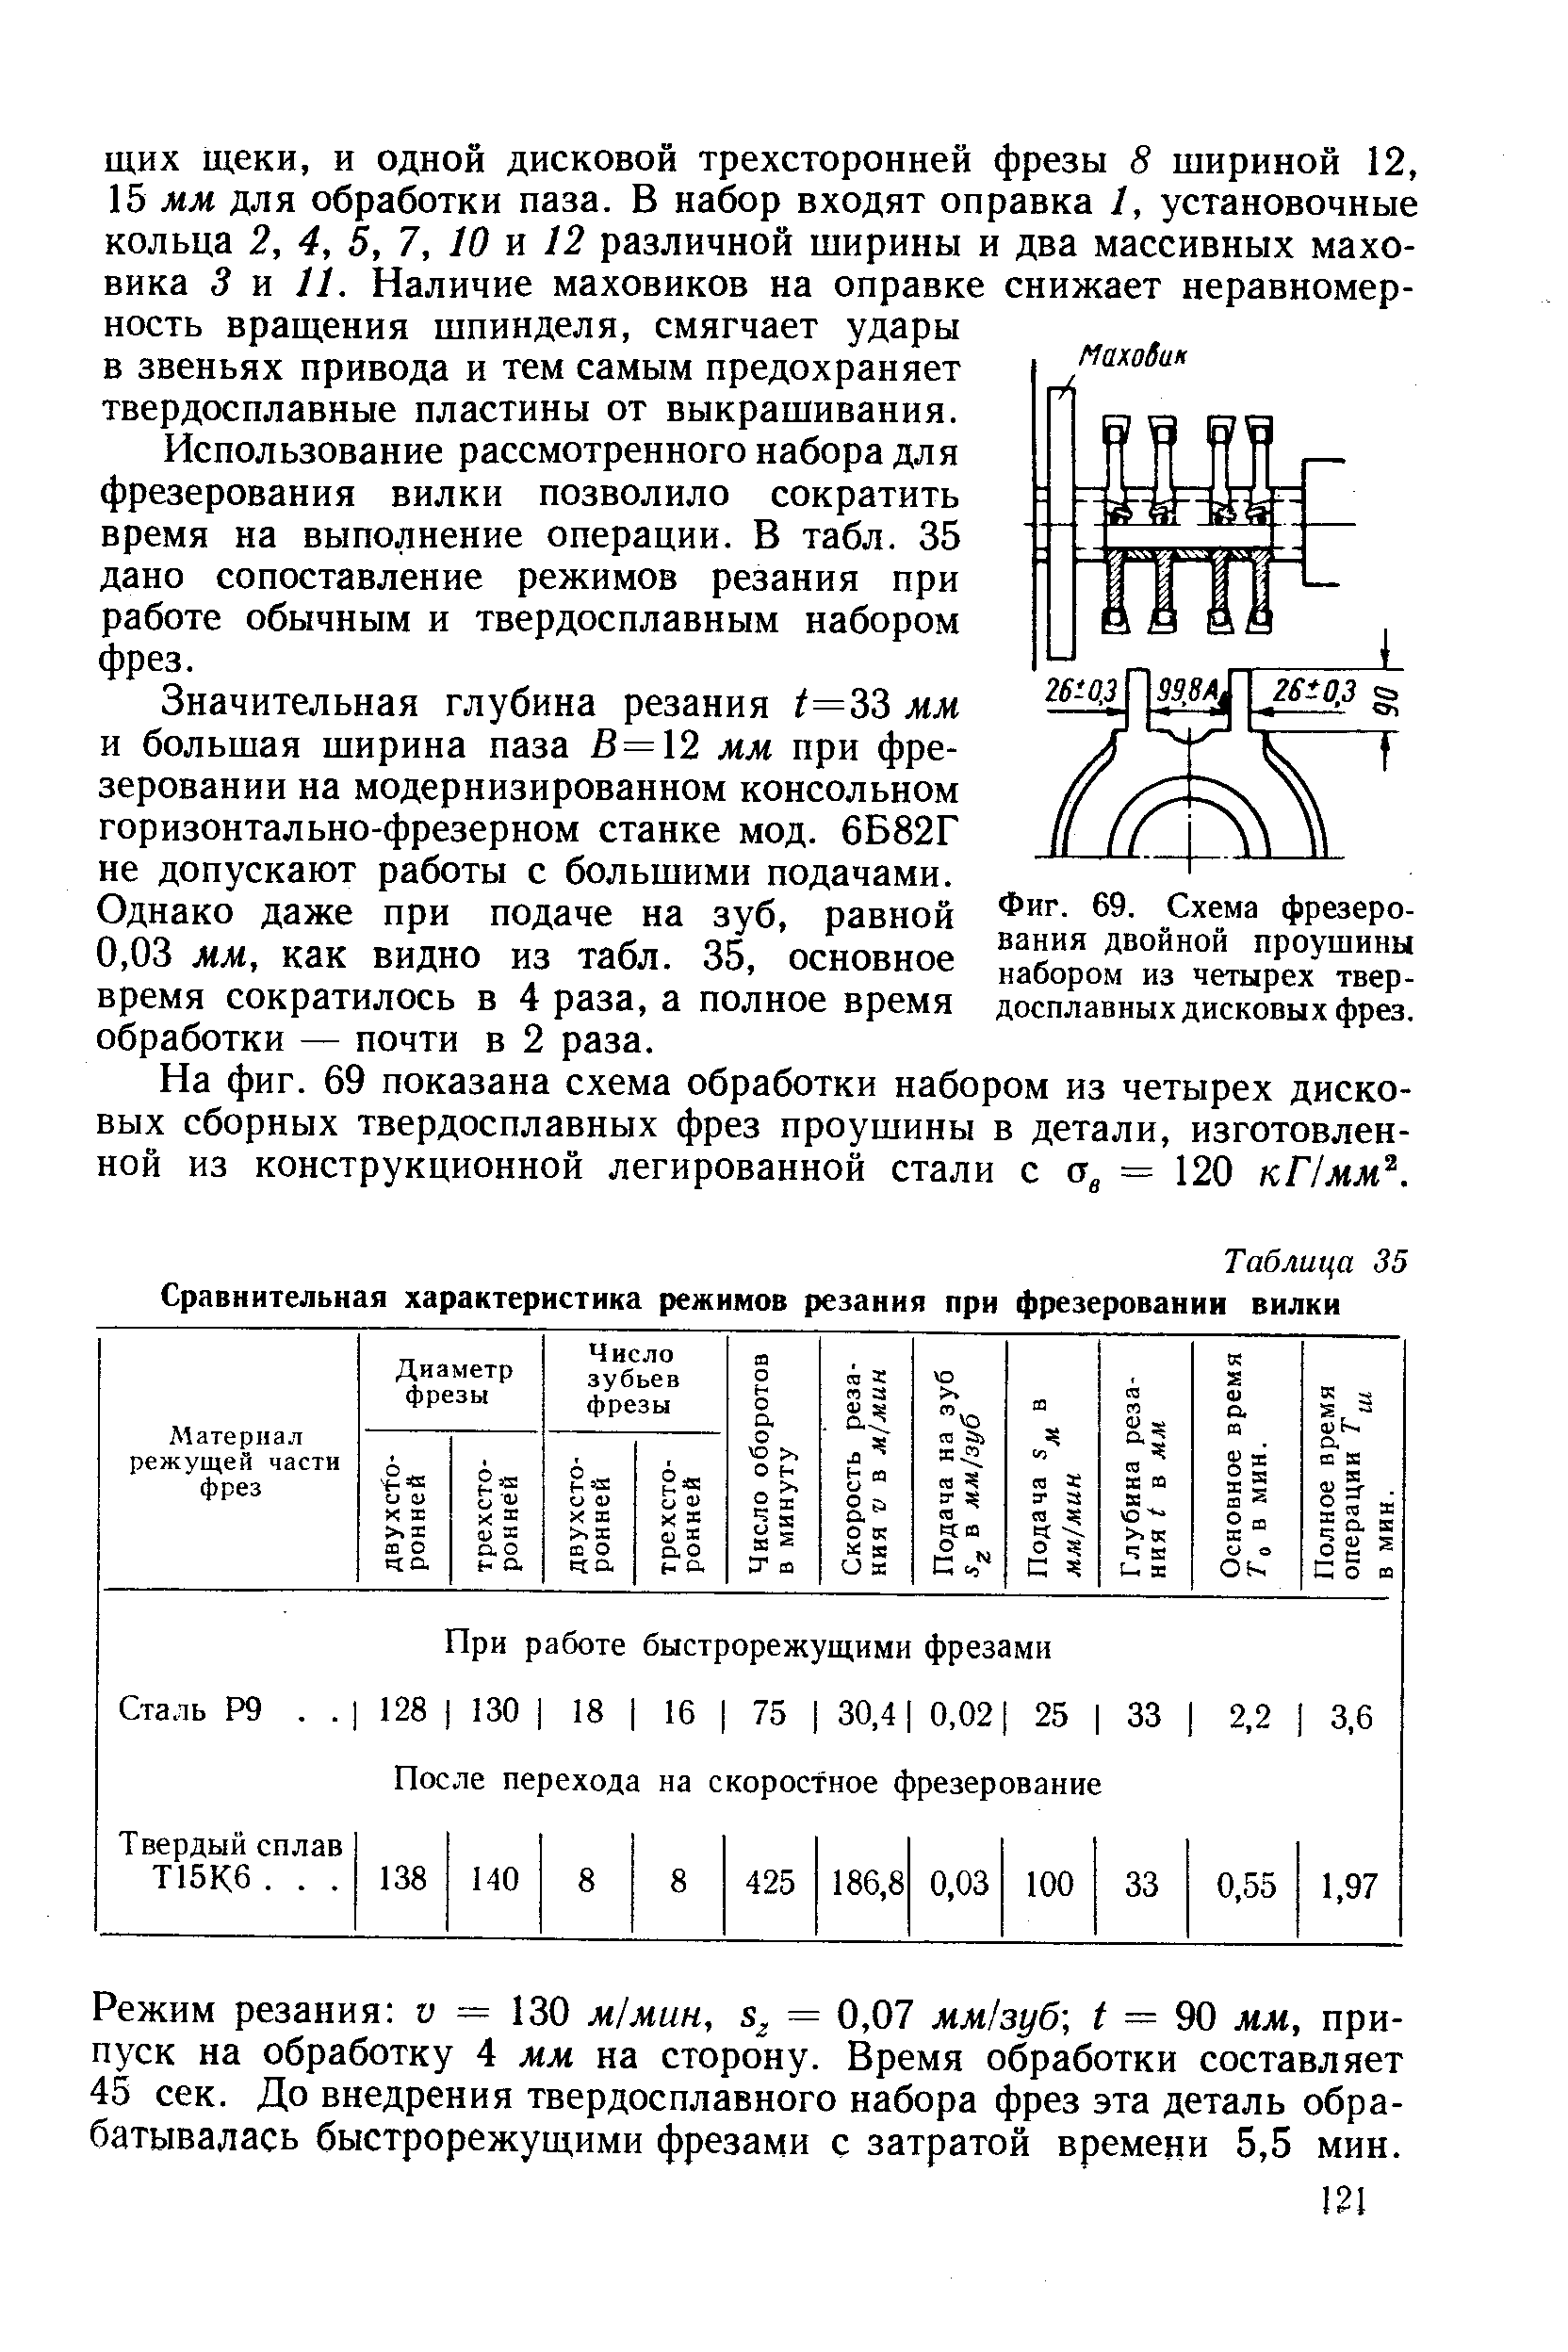 Фиг. 69. <a href="/info/185527">Схема фрезерования</a> двойной проушины набором из четырех твердосплавных дисковых фрез.
